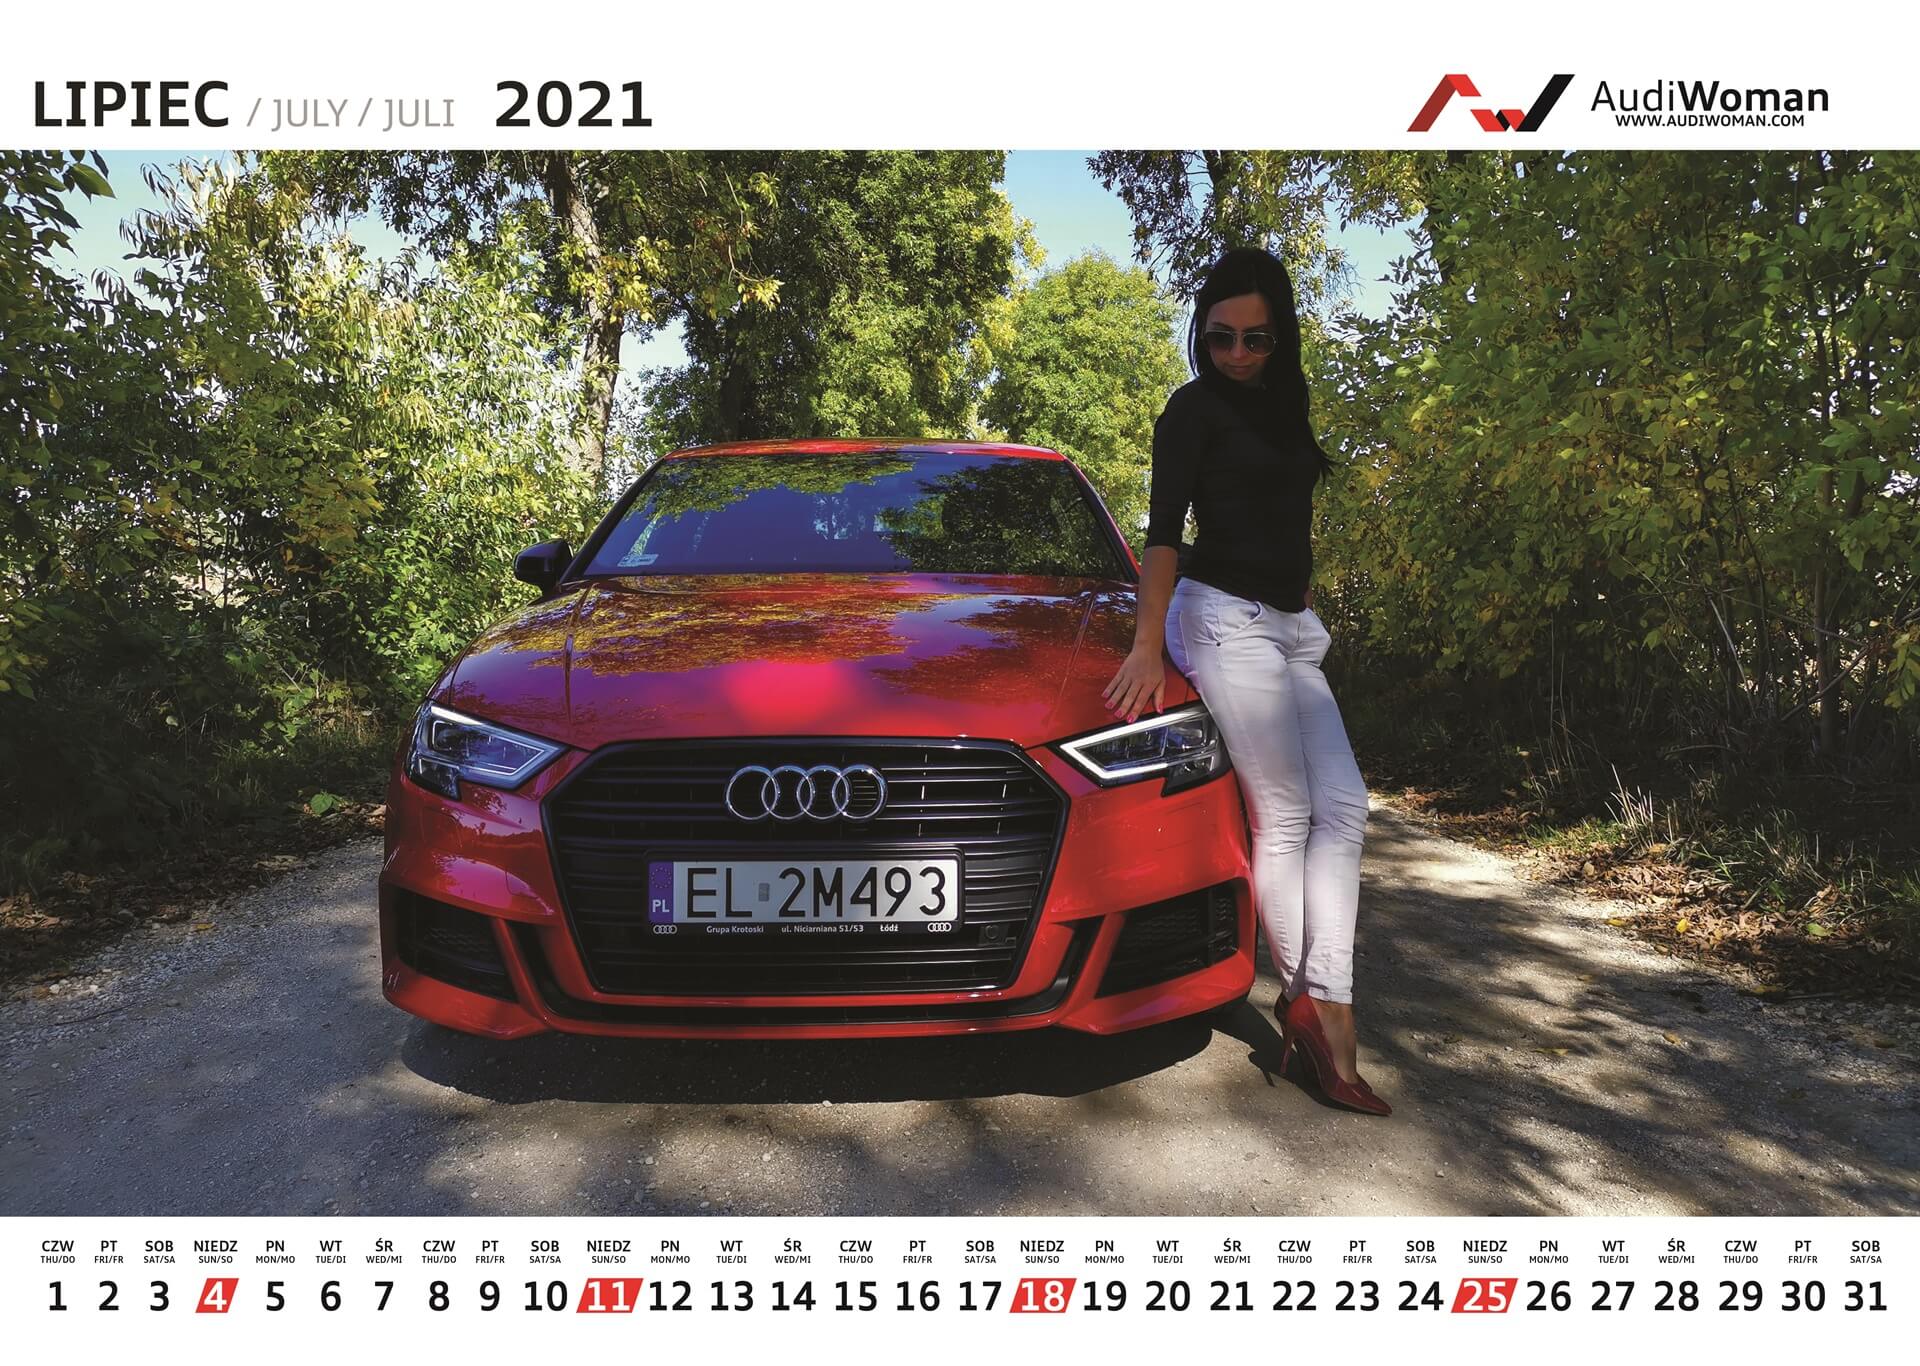 Kalendarz Audi Woman 2021r